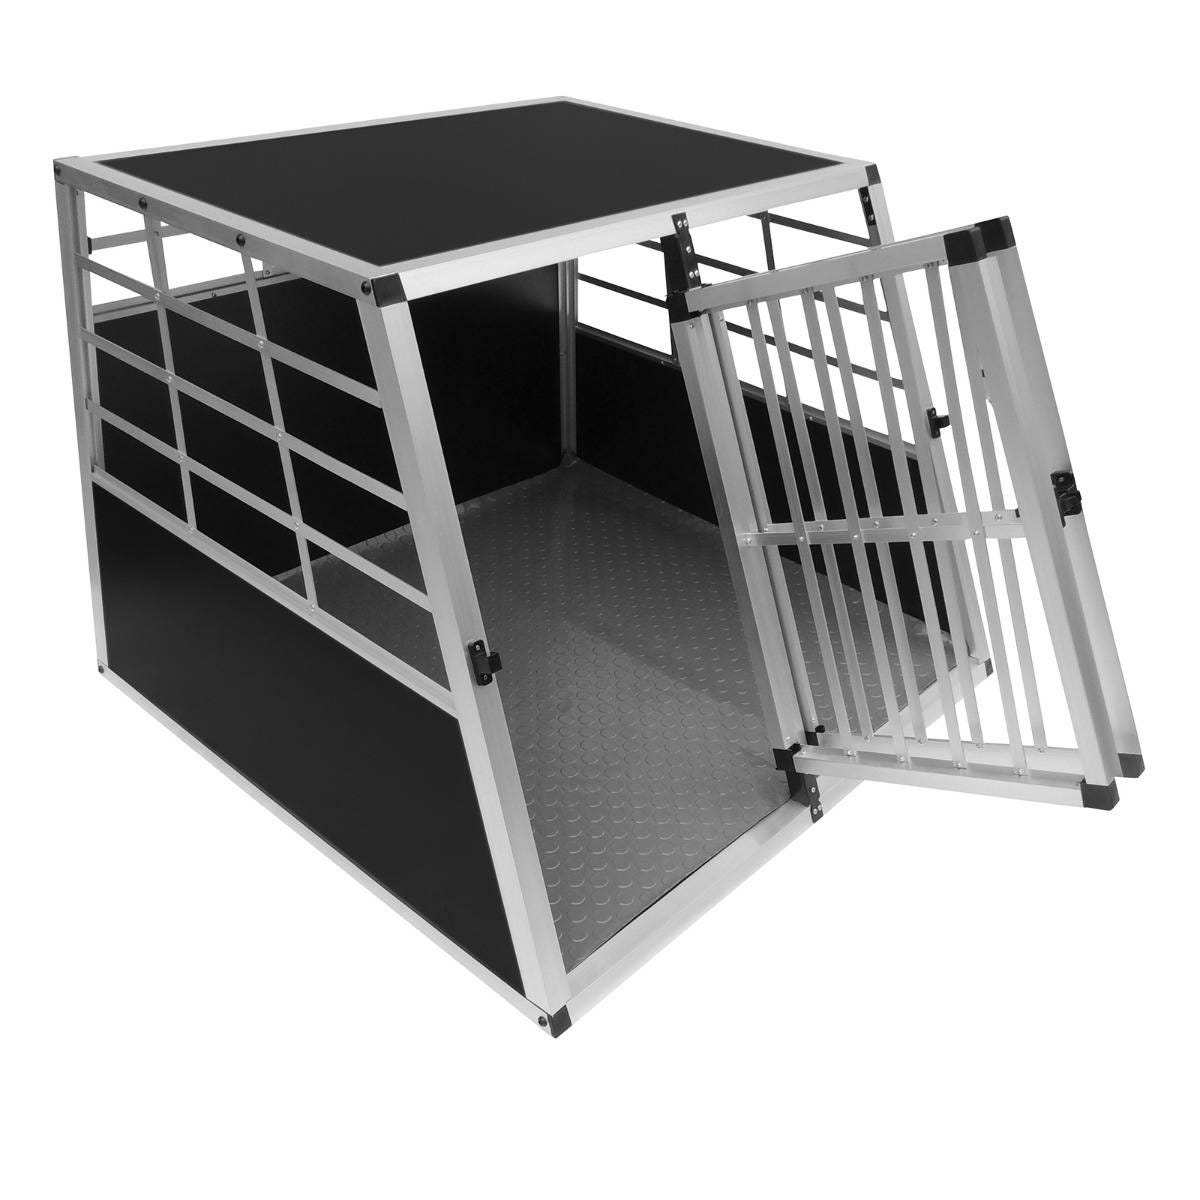 Cage de Transport en Aluminium pour Animaux Format Large Chien Chat Lapin -  90 x 97 x 69 cm - Trapèze - 2 Portes